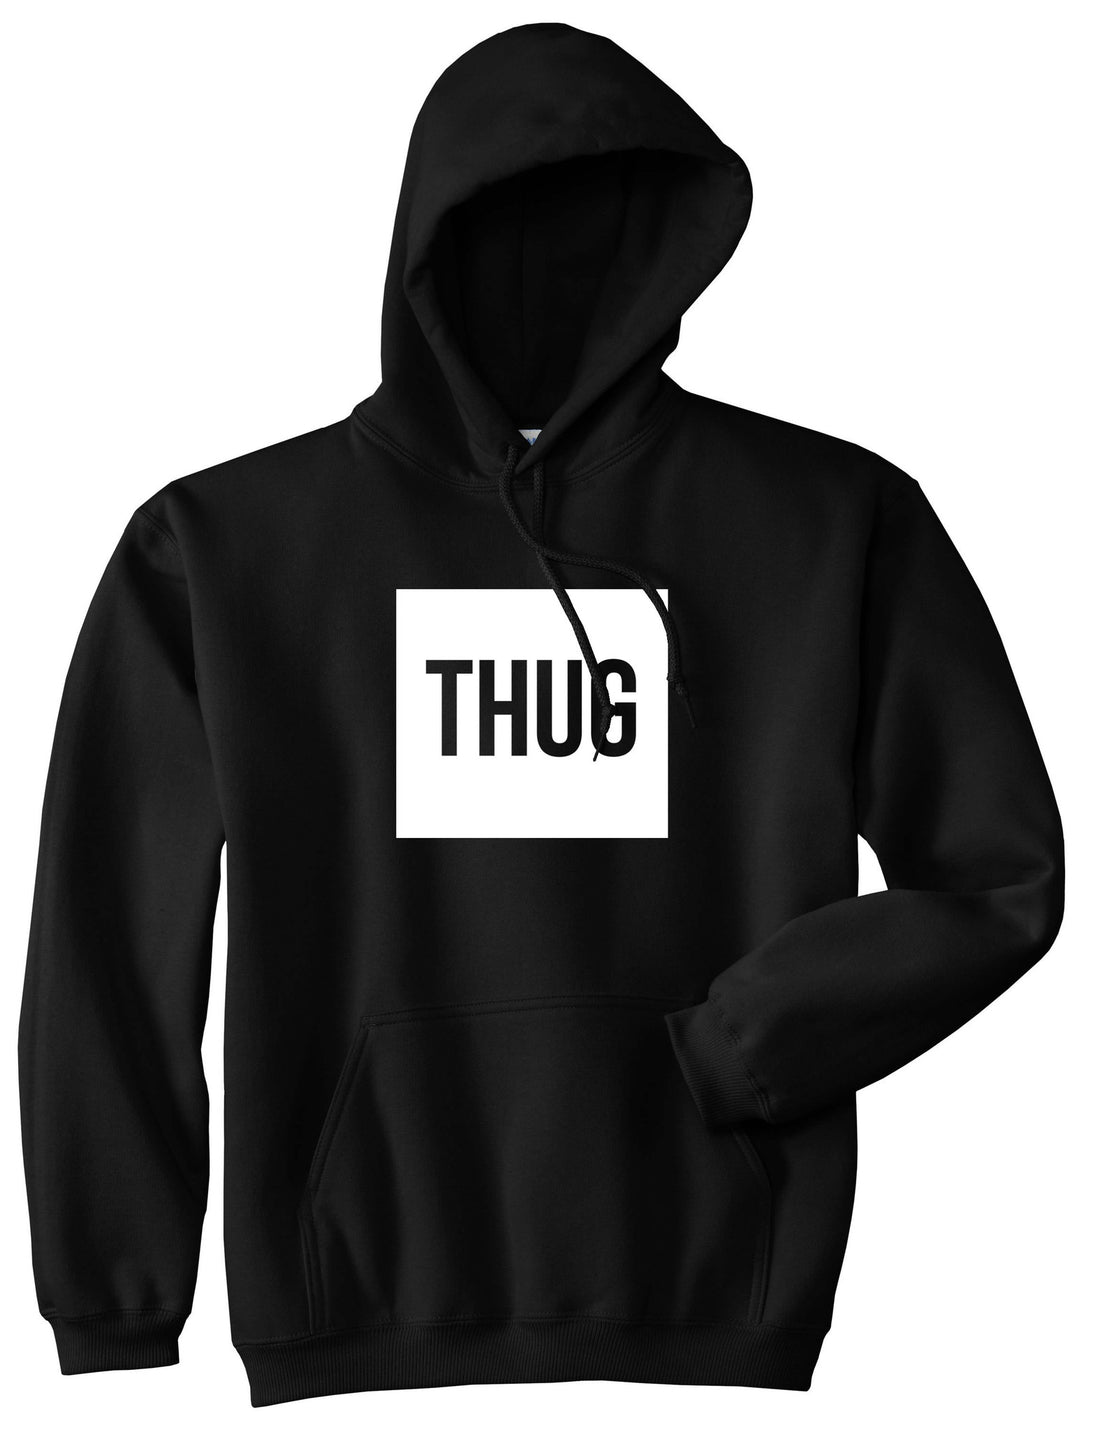 Thug Gangsta Box Logo Pullover Hoodie Hoody in Black by Kings Of NY